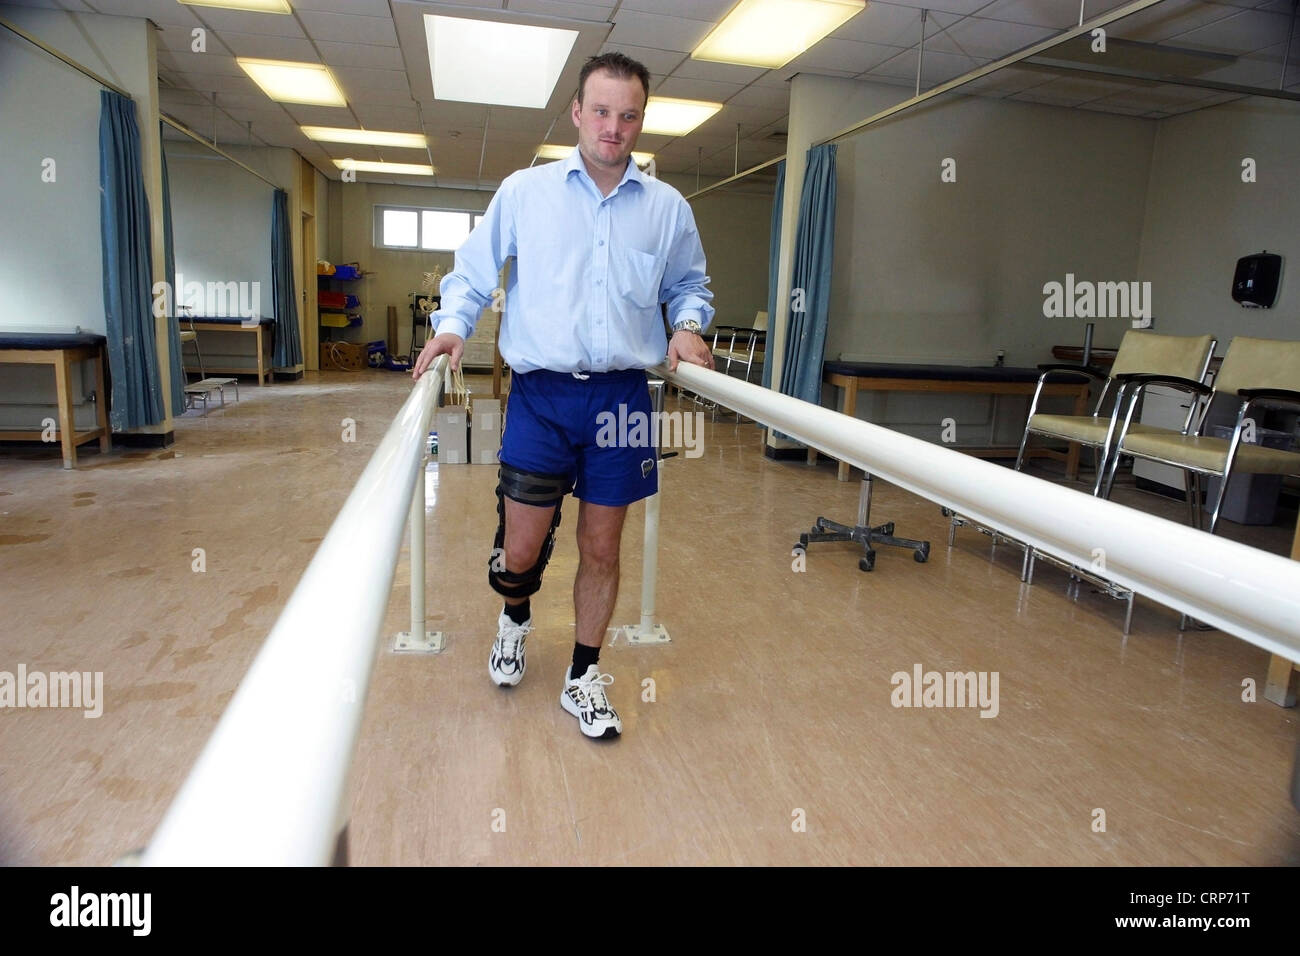 Ein männlicher Patient mit einer rechten Bein Donjoy Prothese gehen mit der Unterstützung von einem Handlauf ausgestattet. Stockfoto